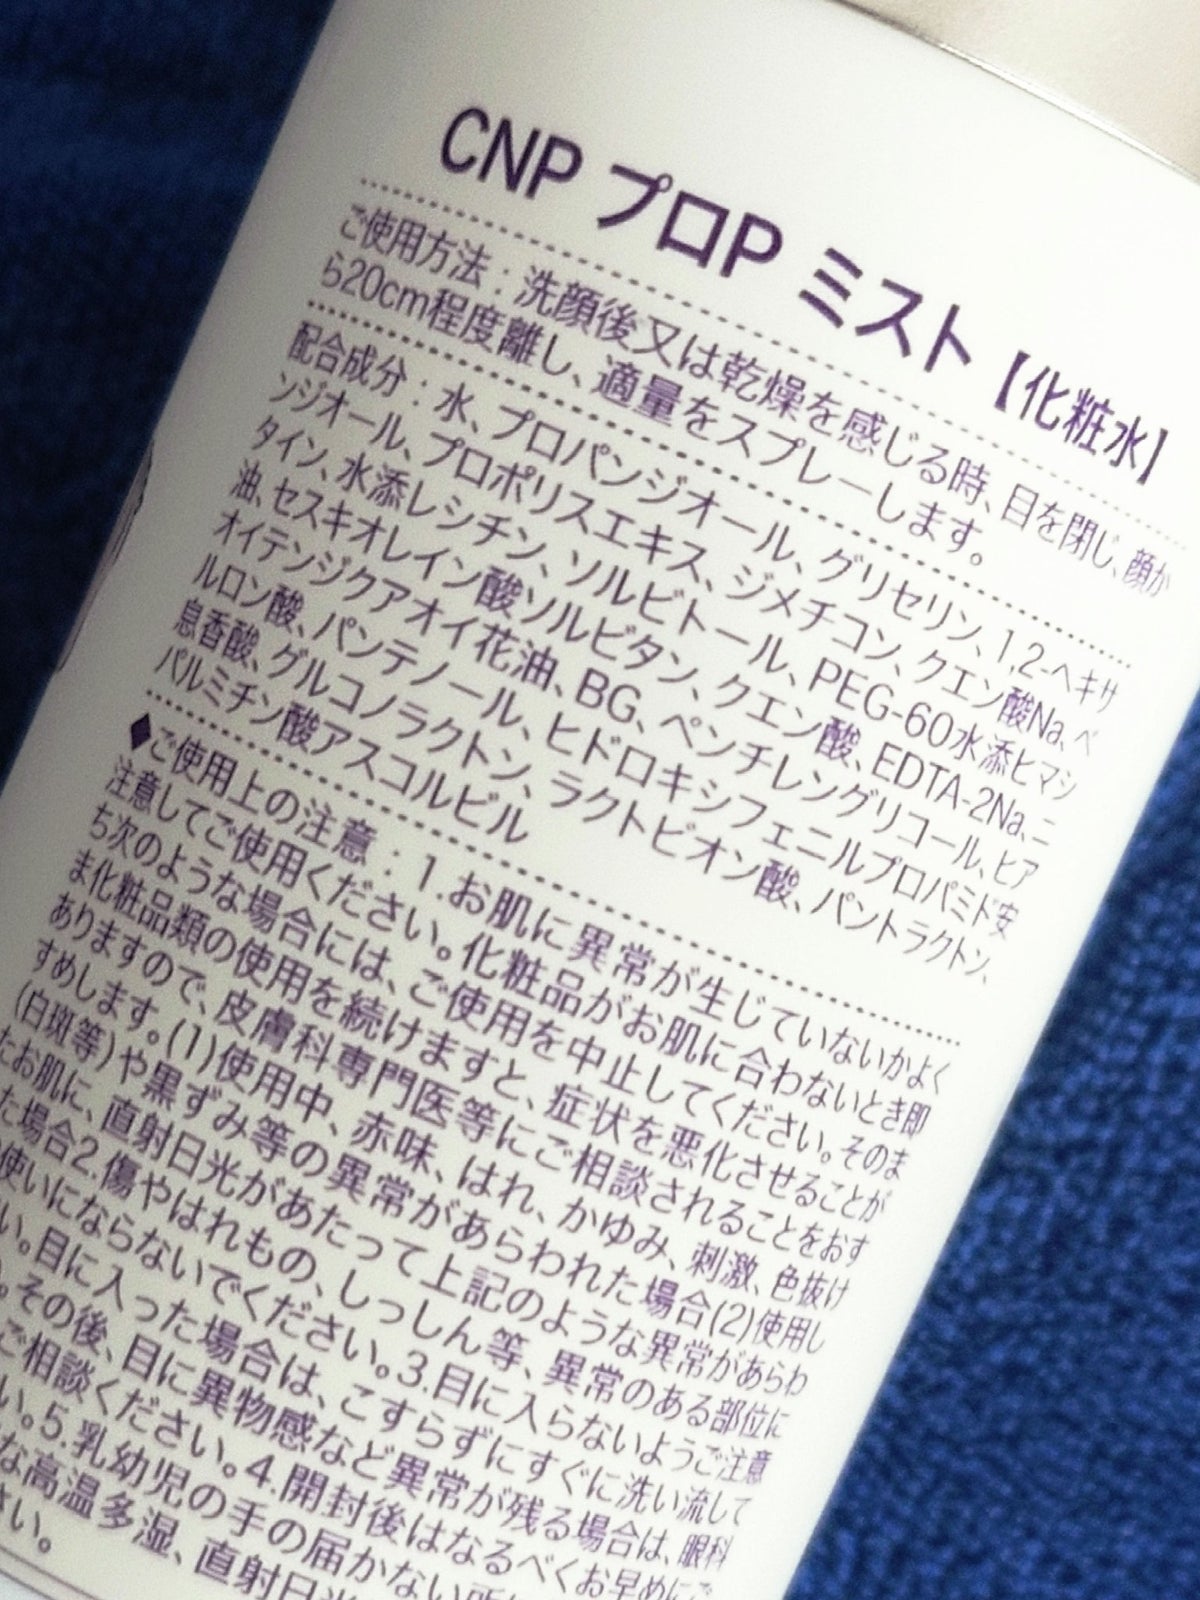 プロP ミスト/CNP Laboratory/ミスト状化粧水を使ったクチコミ（5枚目）